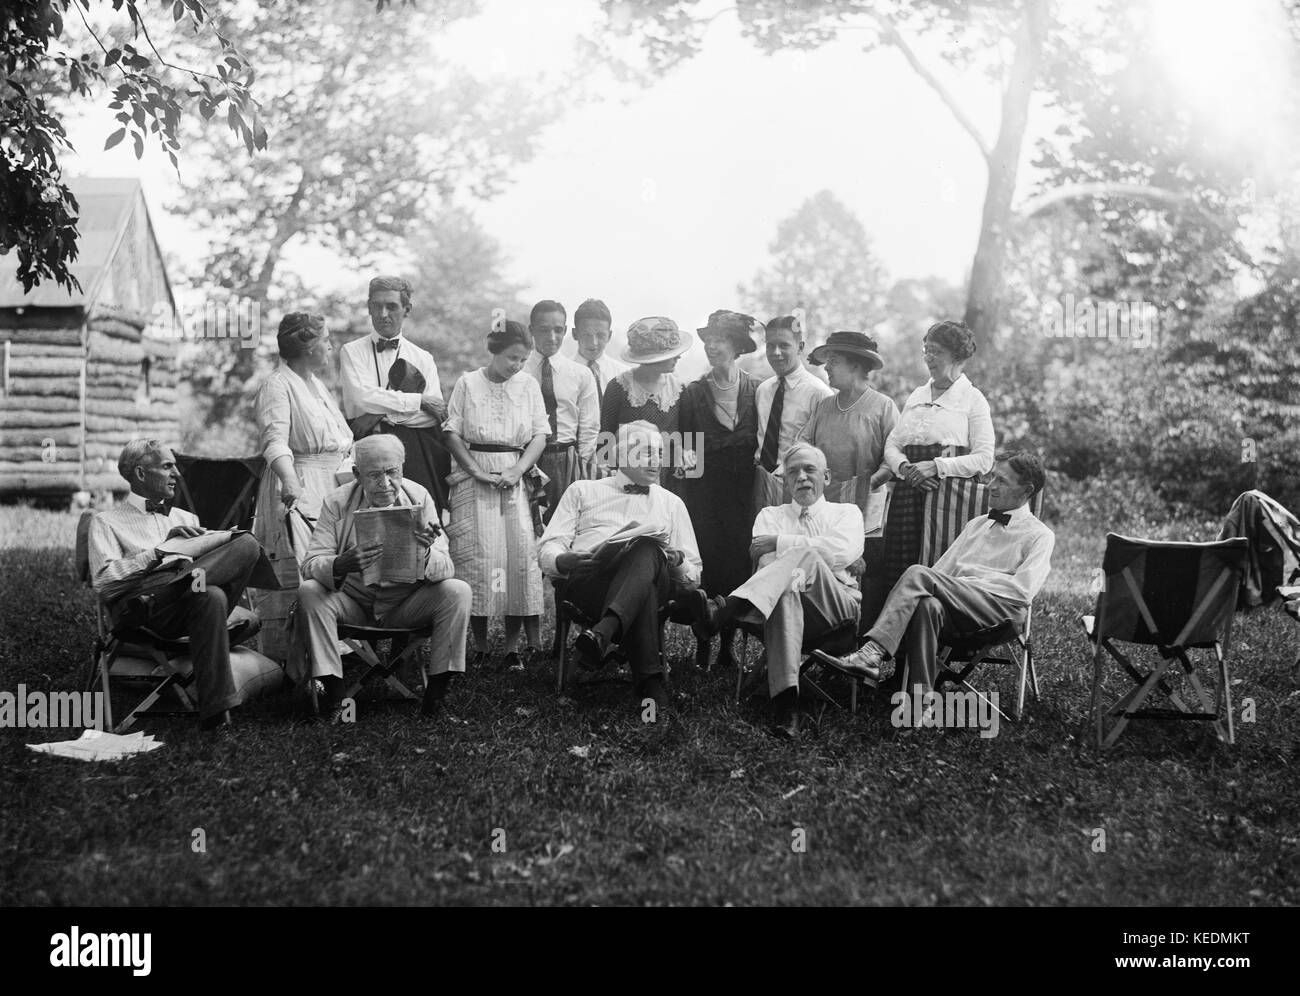 Henry Ford,Thomas Edison,presidente statunitense Warren Harding harvey firestone con famiglie,ritratto mentre è seduto al campeggio,maryland,Stati Uniti d'America,Harris & ewing,1921 Foto Stock